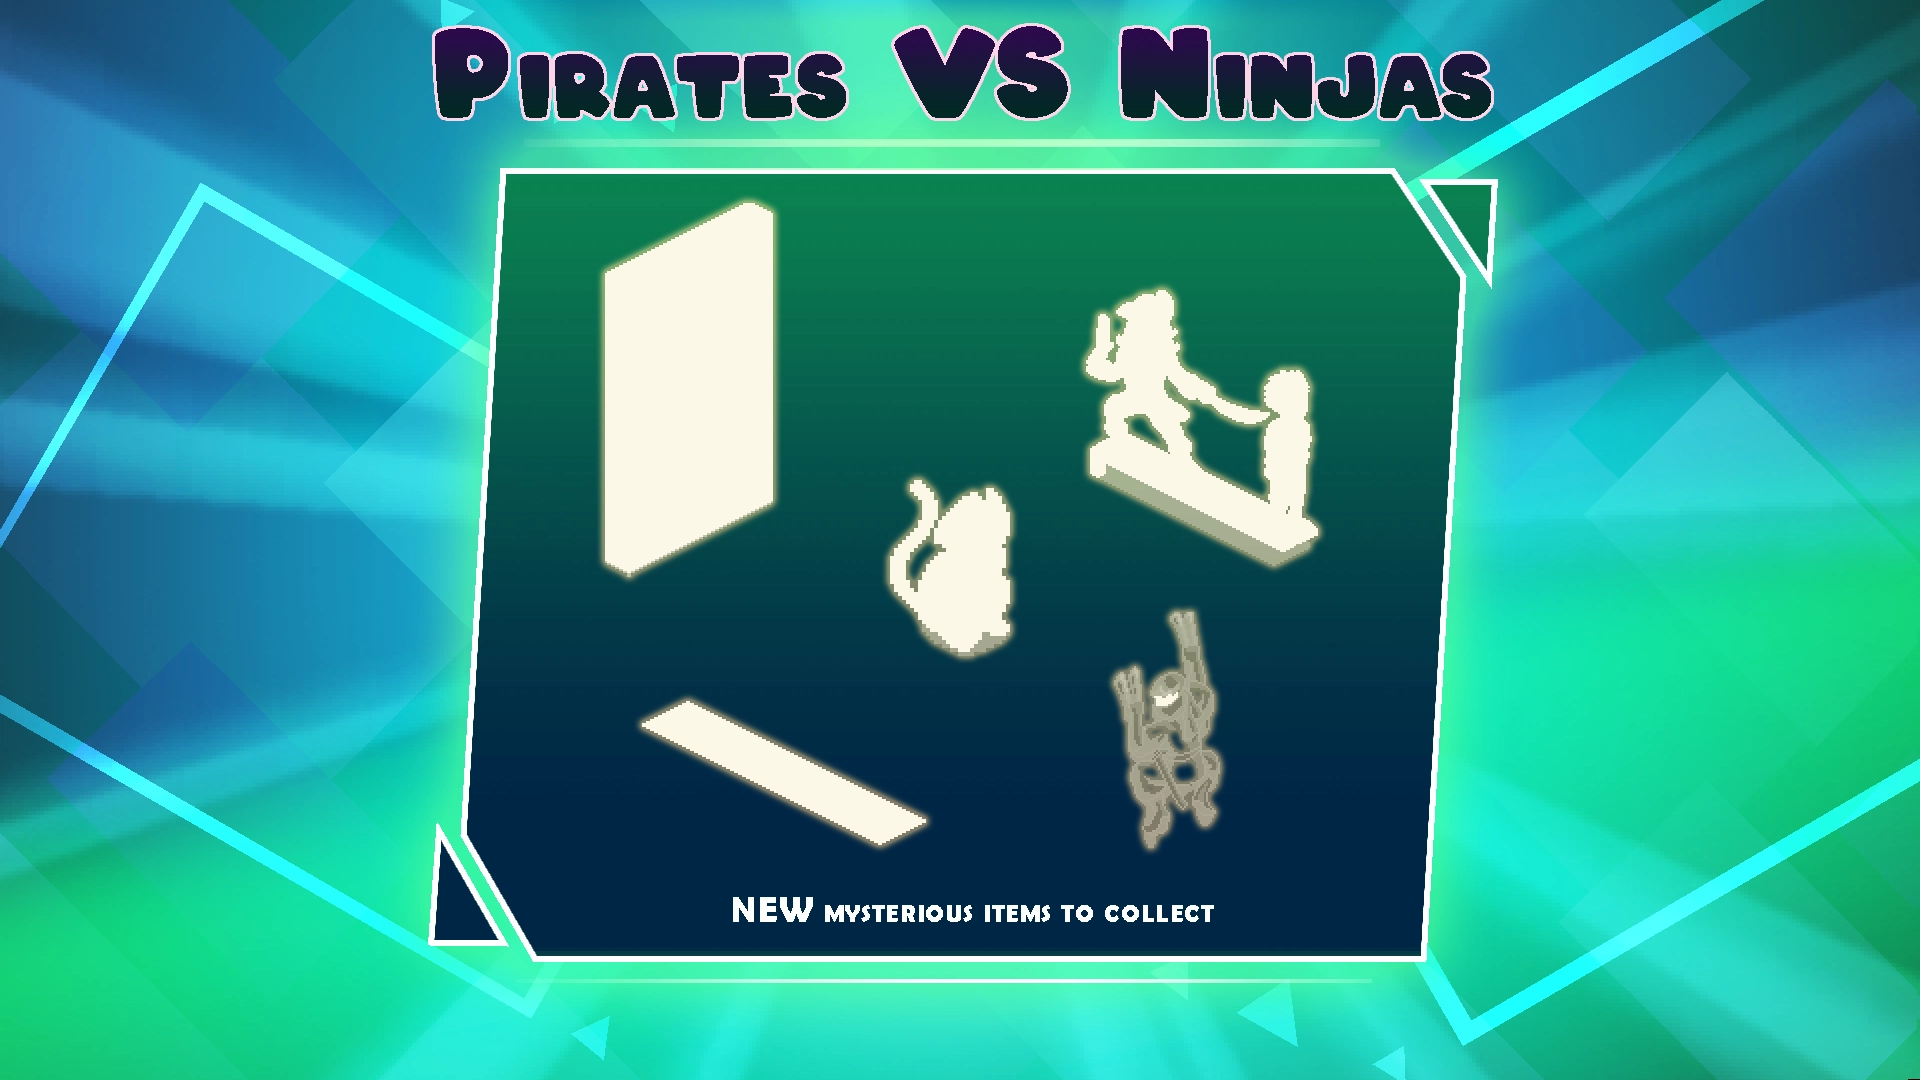 PewDiePie's Tuber Simulator Update: Pirates Versus Ninjas